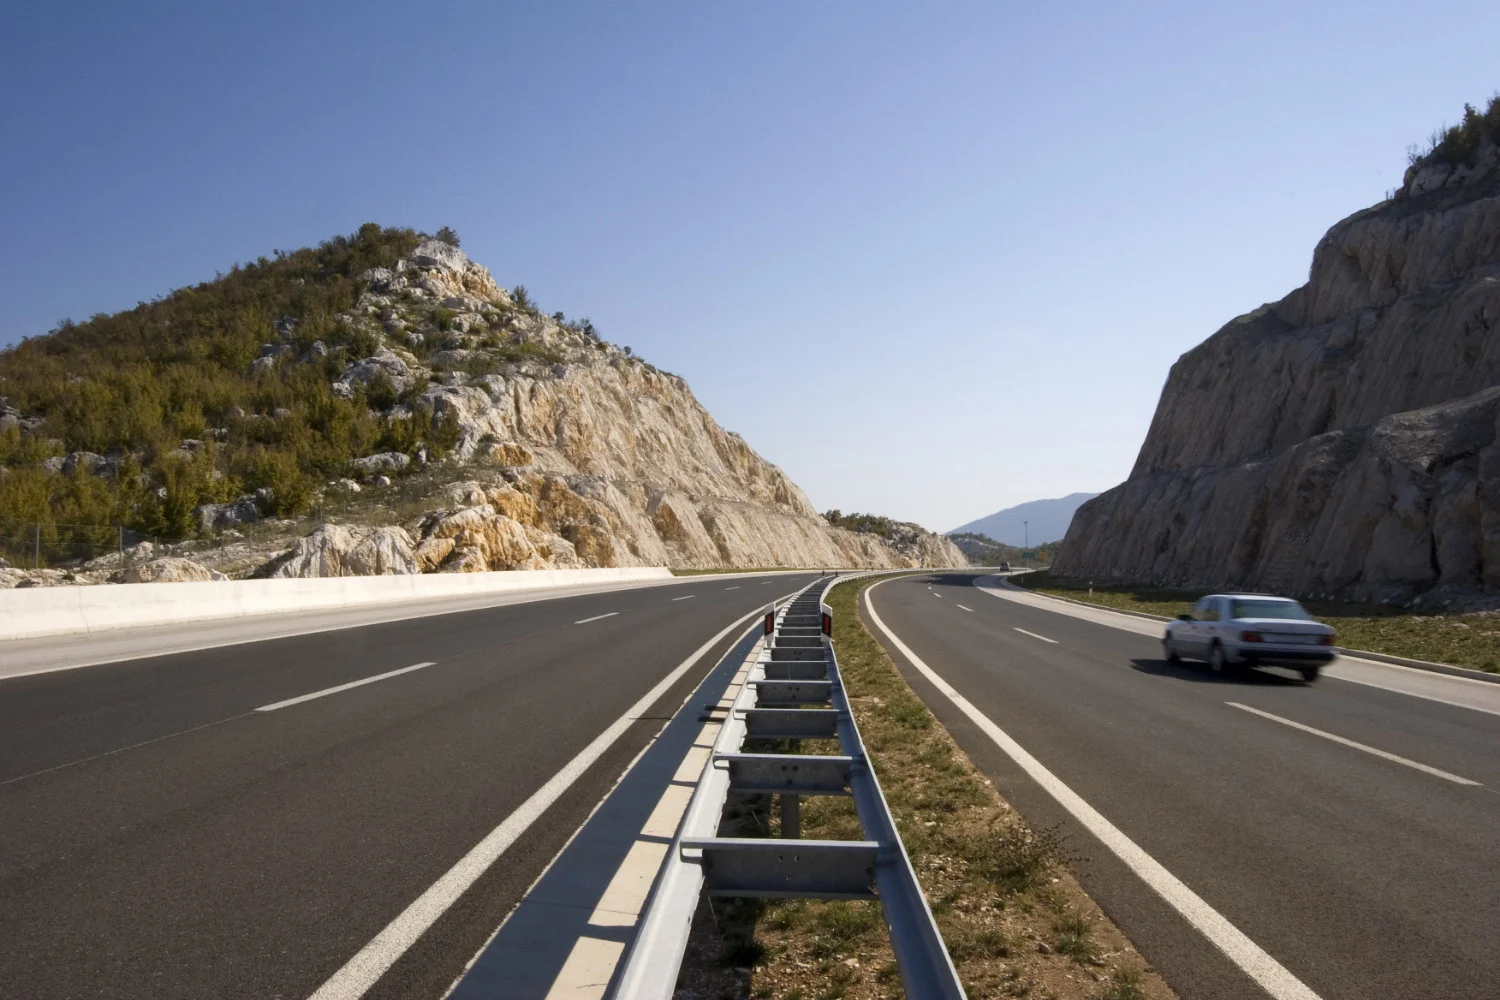 A horvát autópályák a magas sebességkorlátozásukról ismertek. A horvát autópályák sebességkorlátozása 130 km/h.